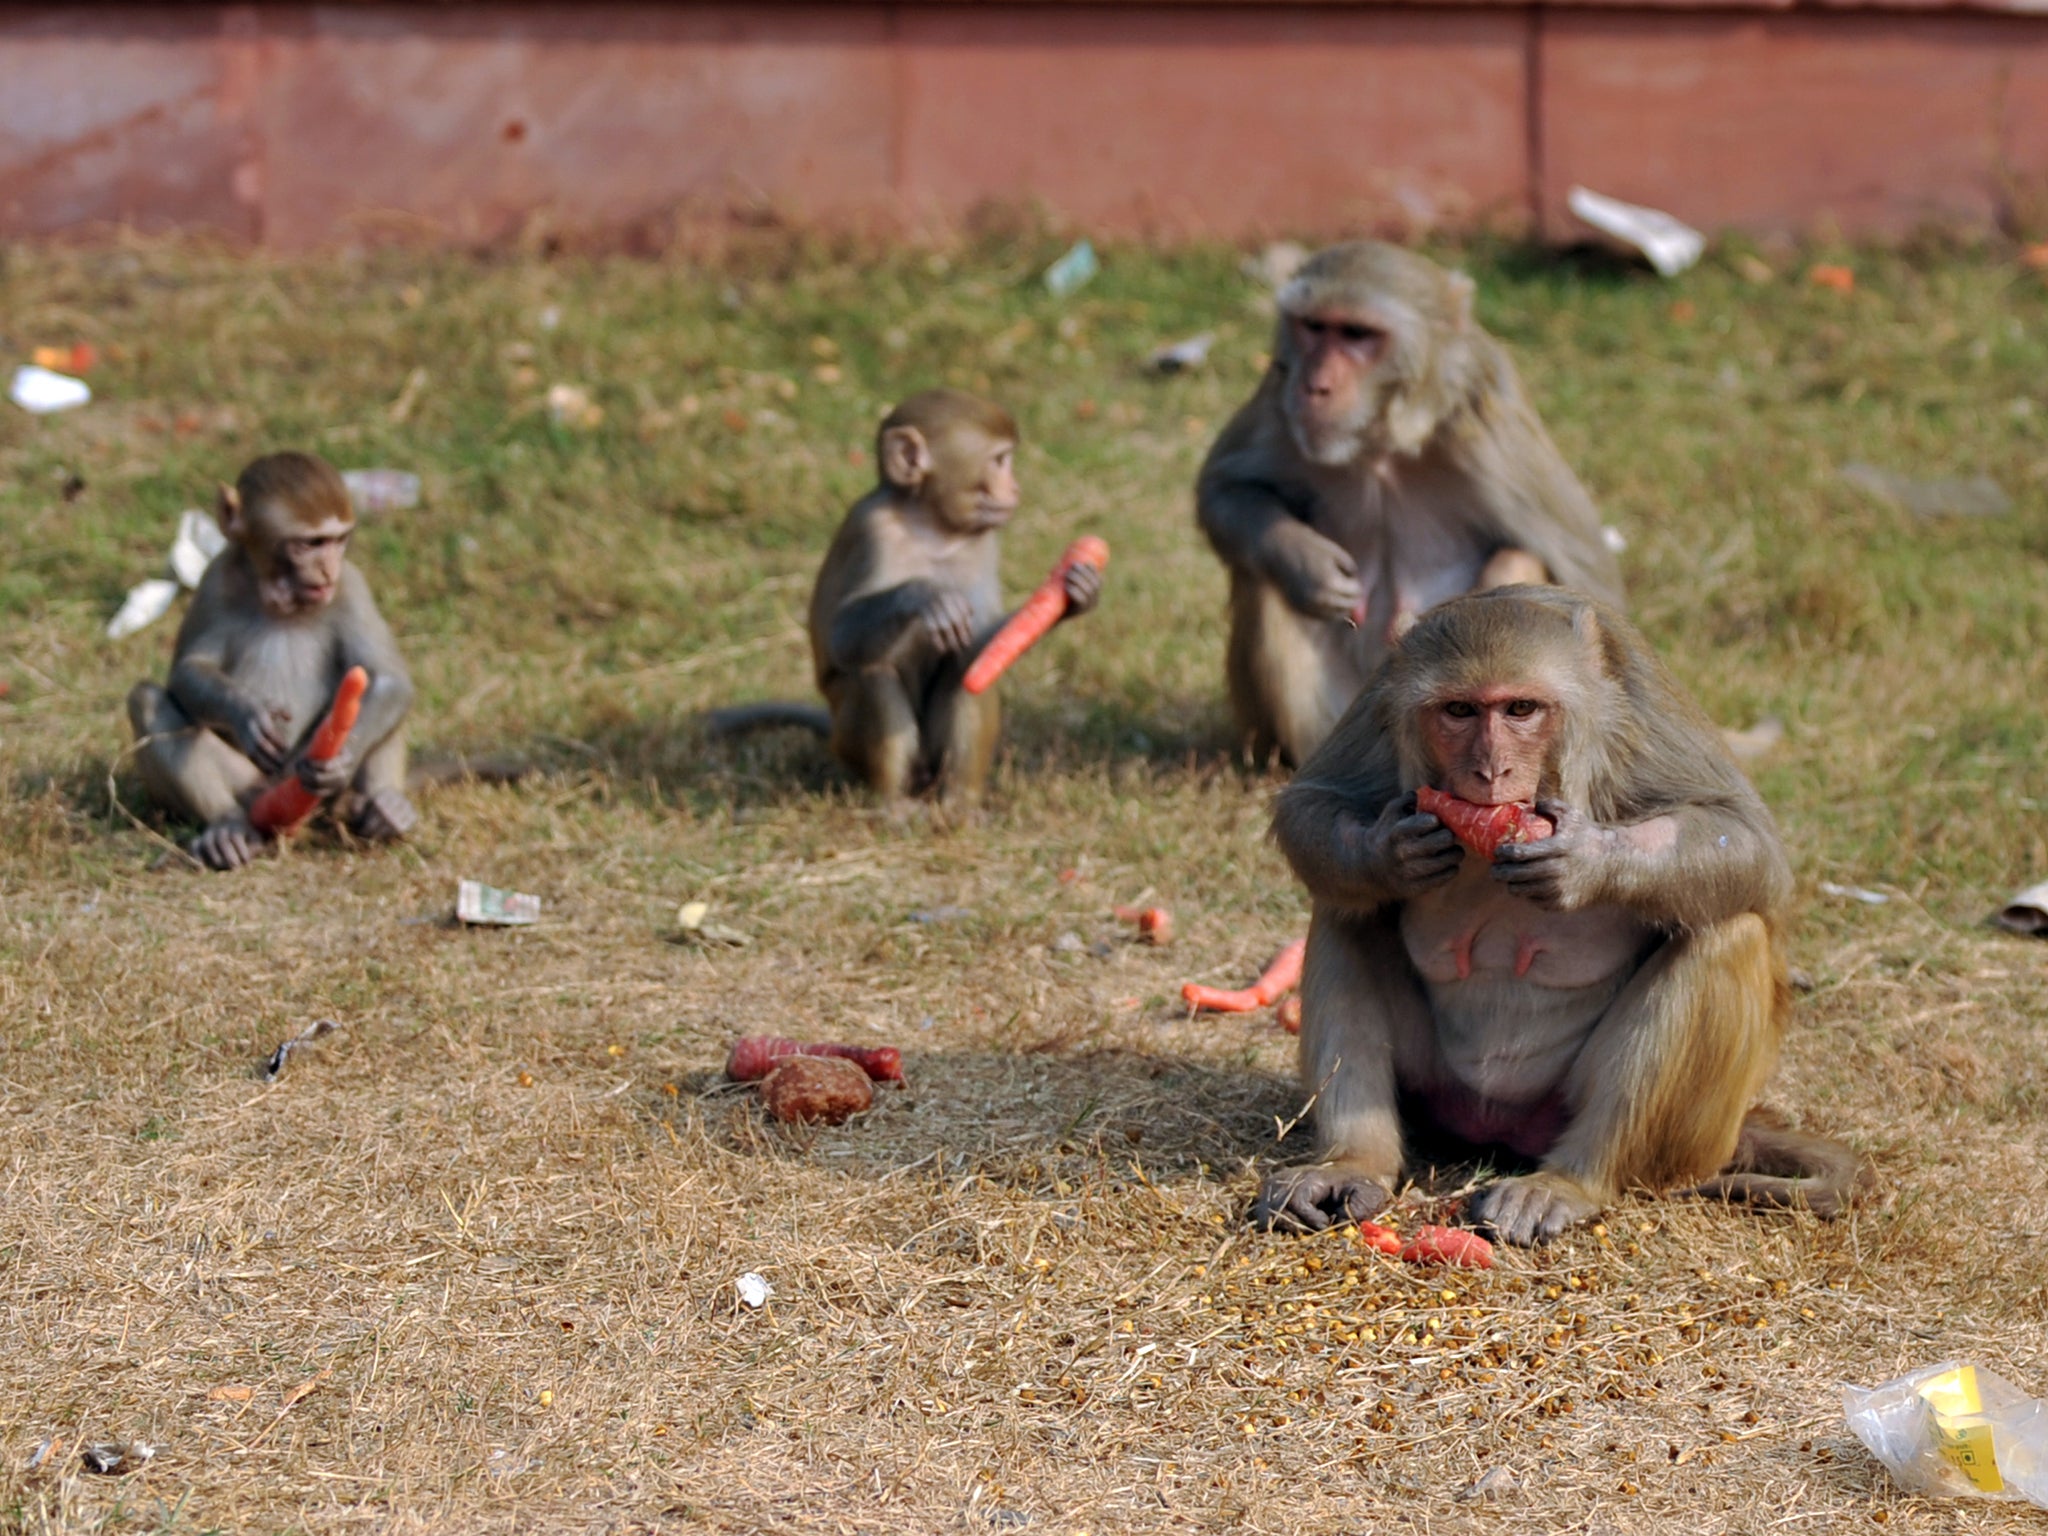 Rhesus macaque monkeys eat carrots in New Delhi on December 22, 2011.